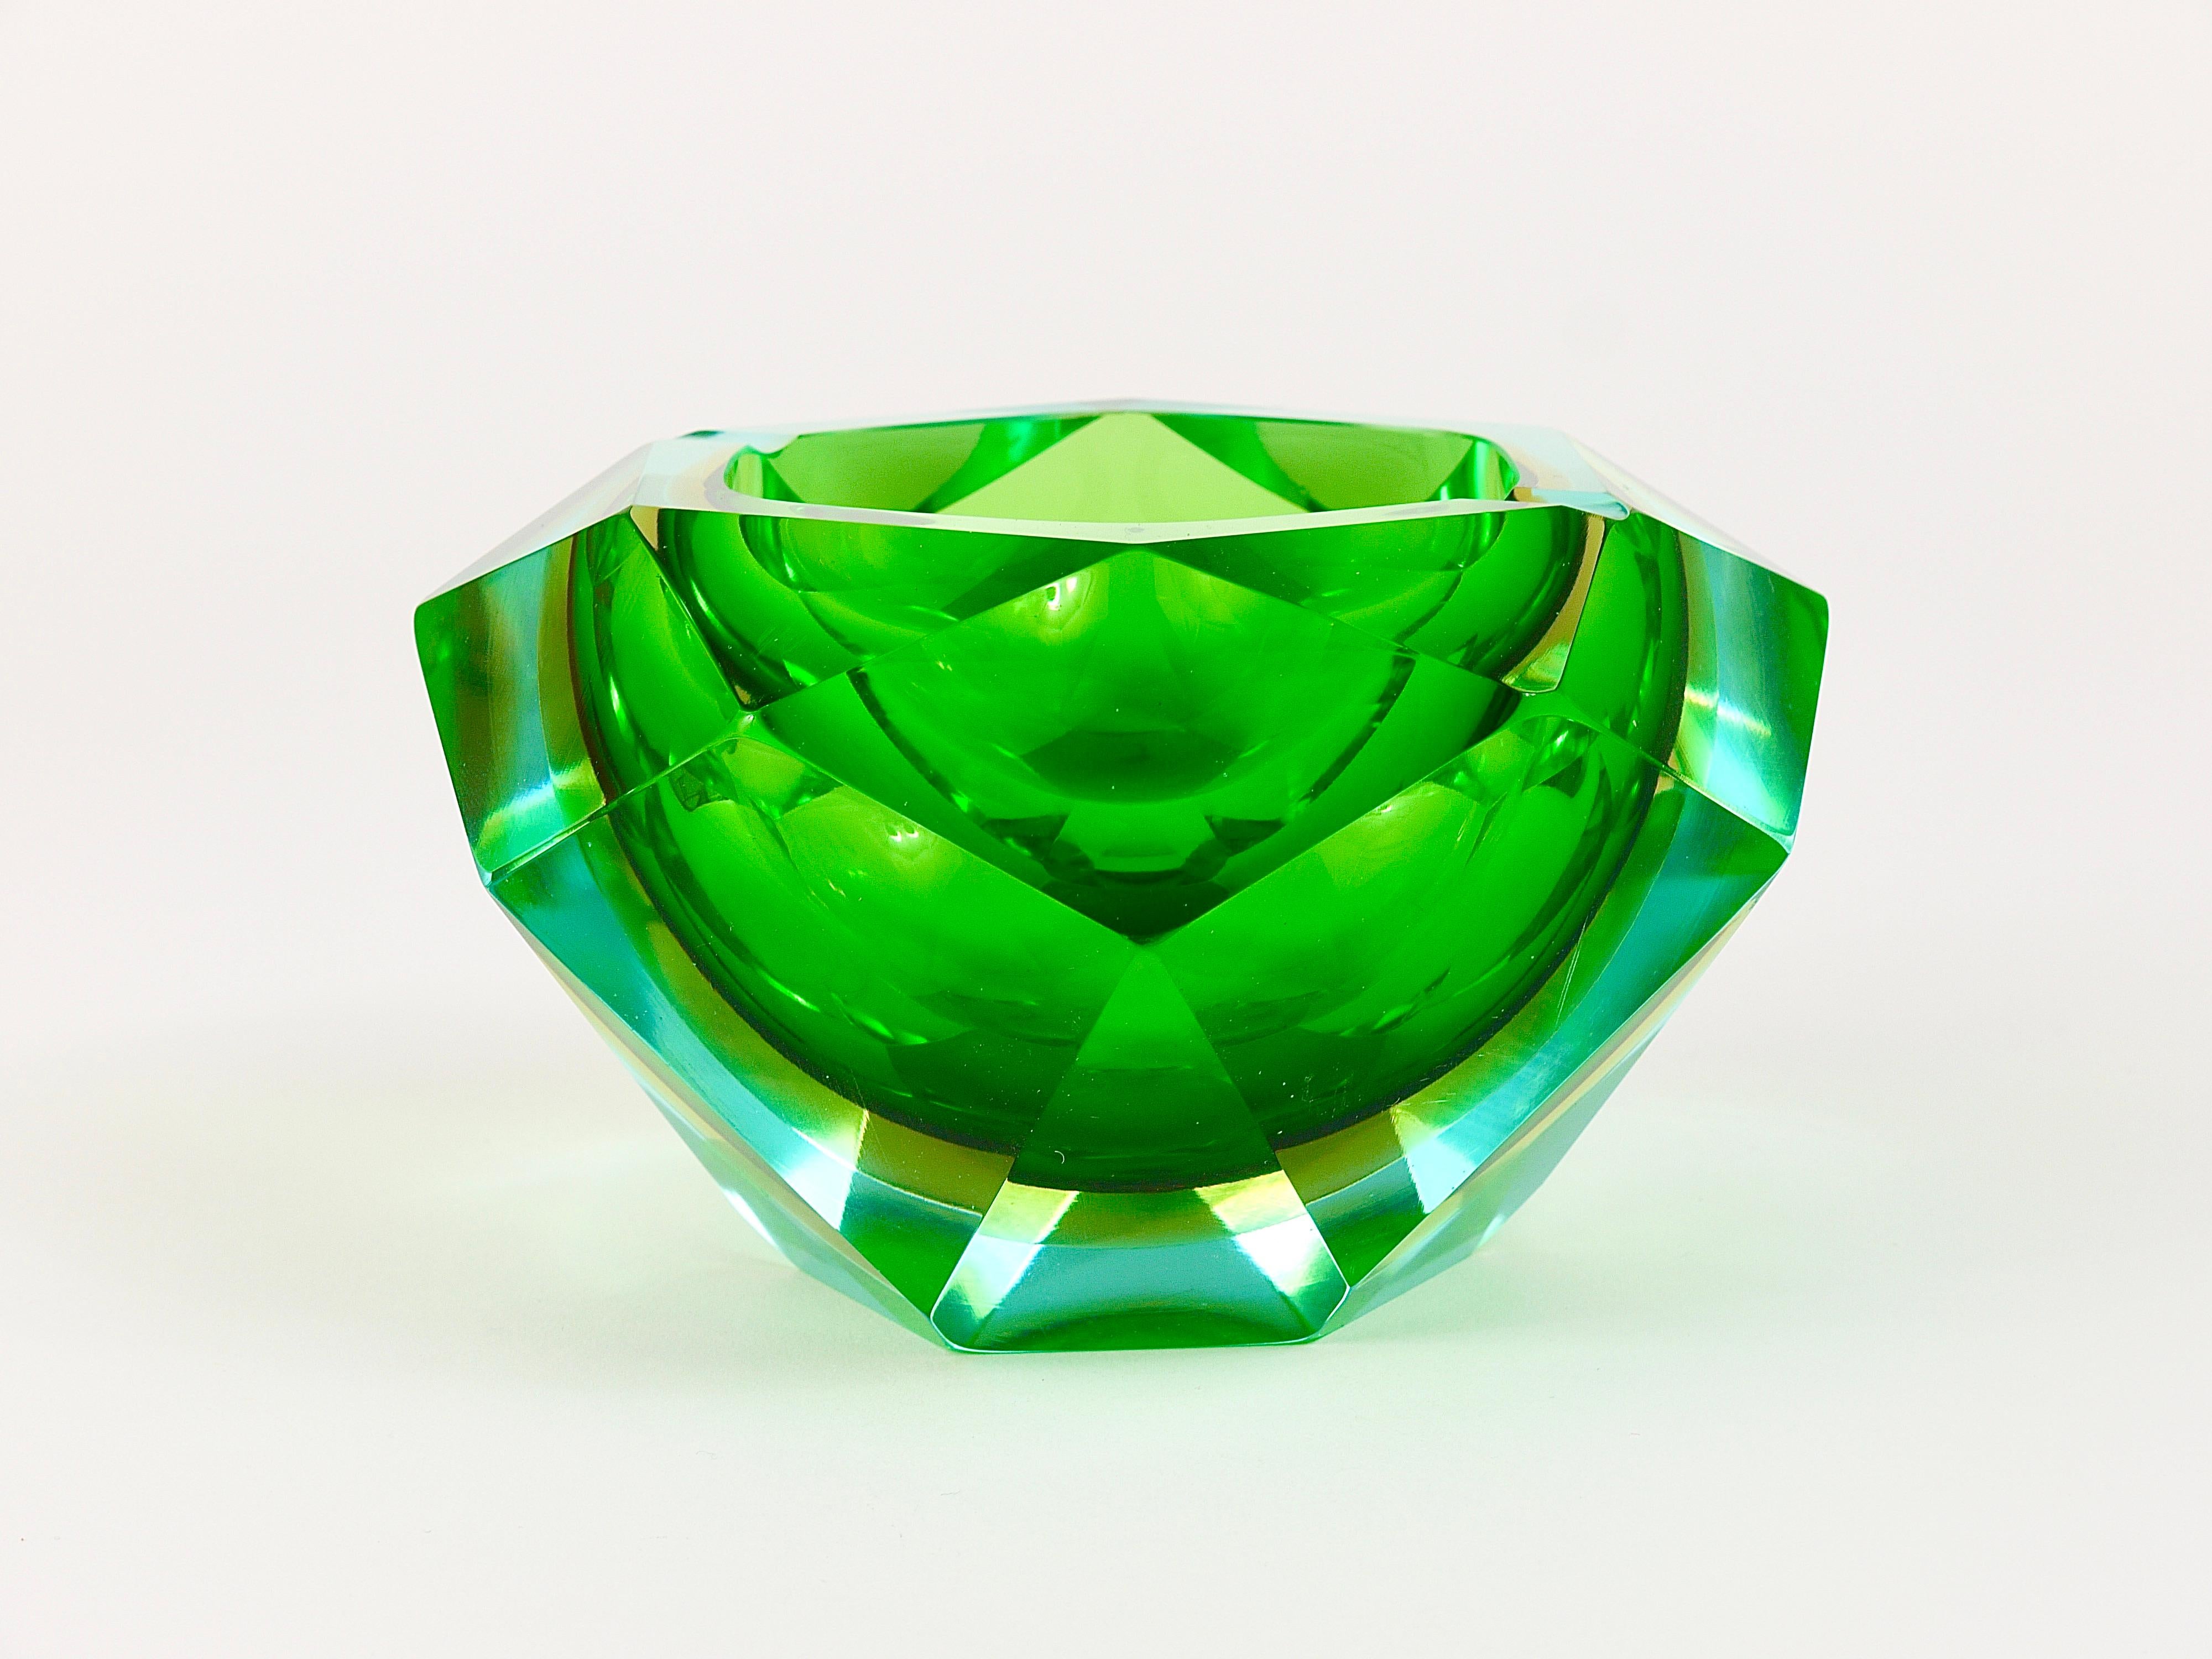 Magnifique cendrier en verre de Murano à facettes multiples et poli, en forme de diamant, datant des années 1960. Conçu par Flavio Poli pour Seguso Vetri d'Arte, Italie. Une combinaison colorée de verre d'art bleu clair, jaune et vert. En très bon